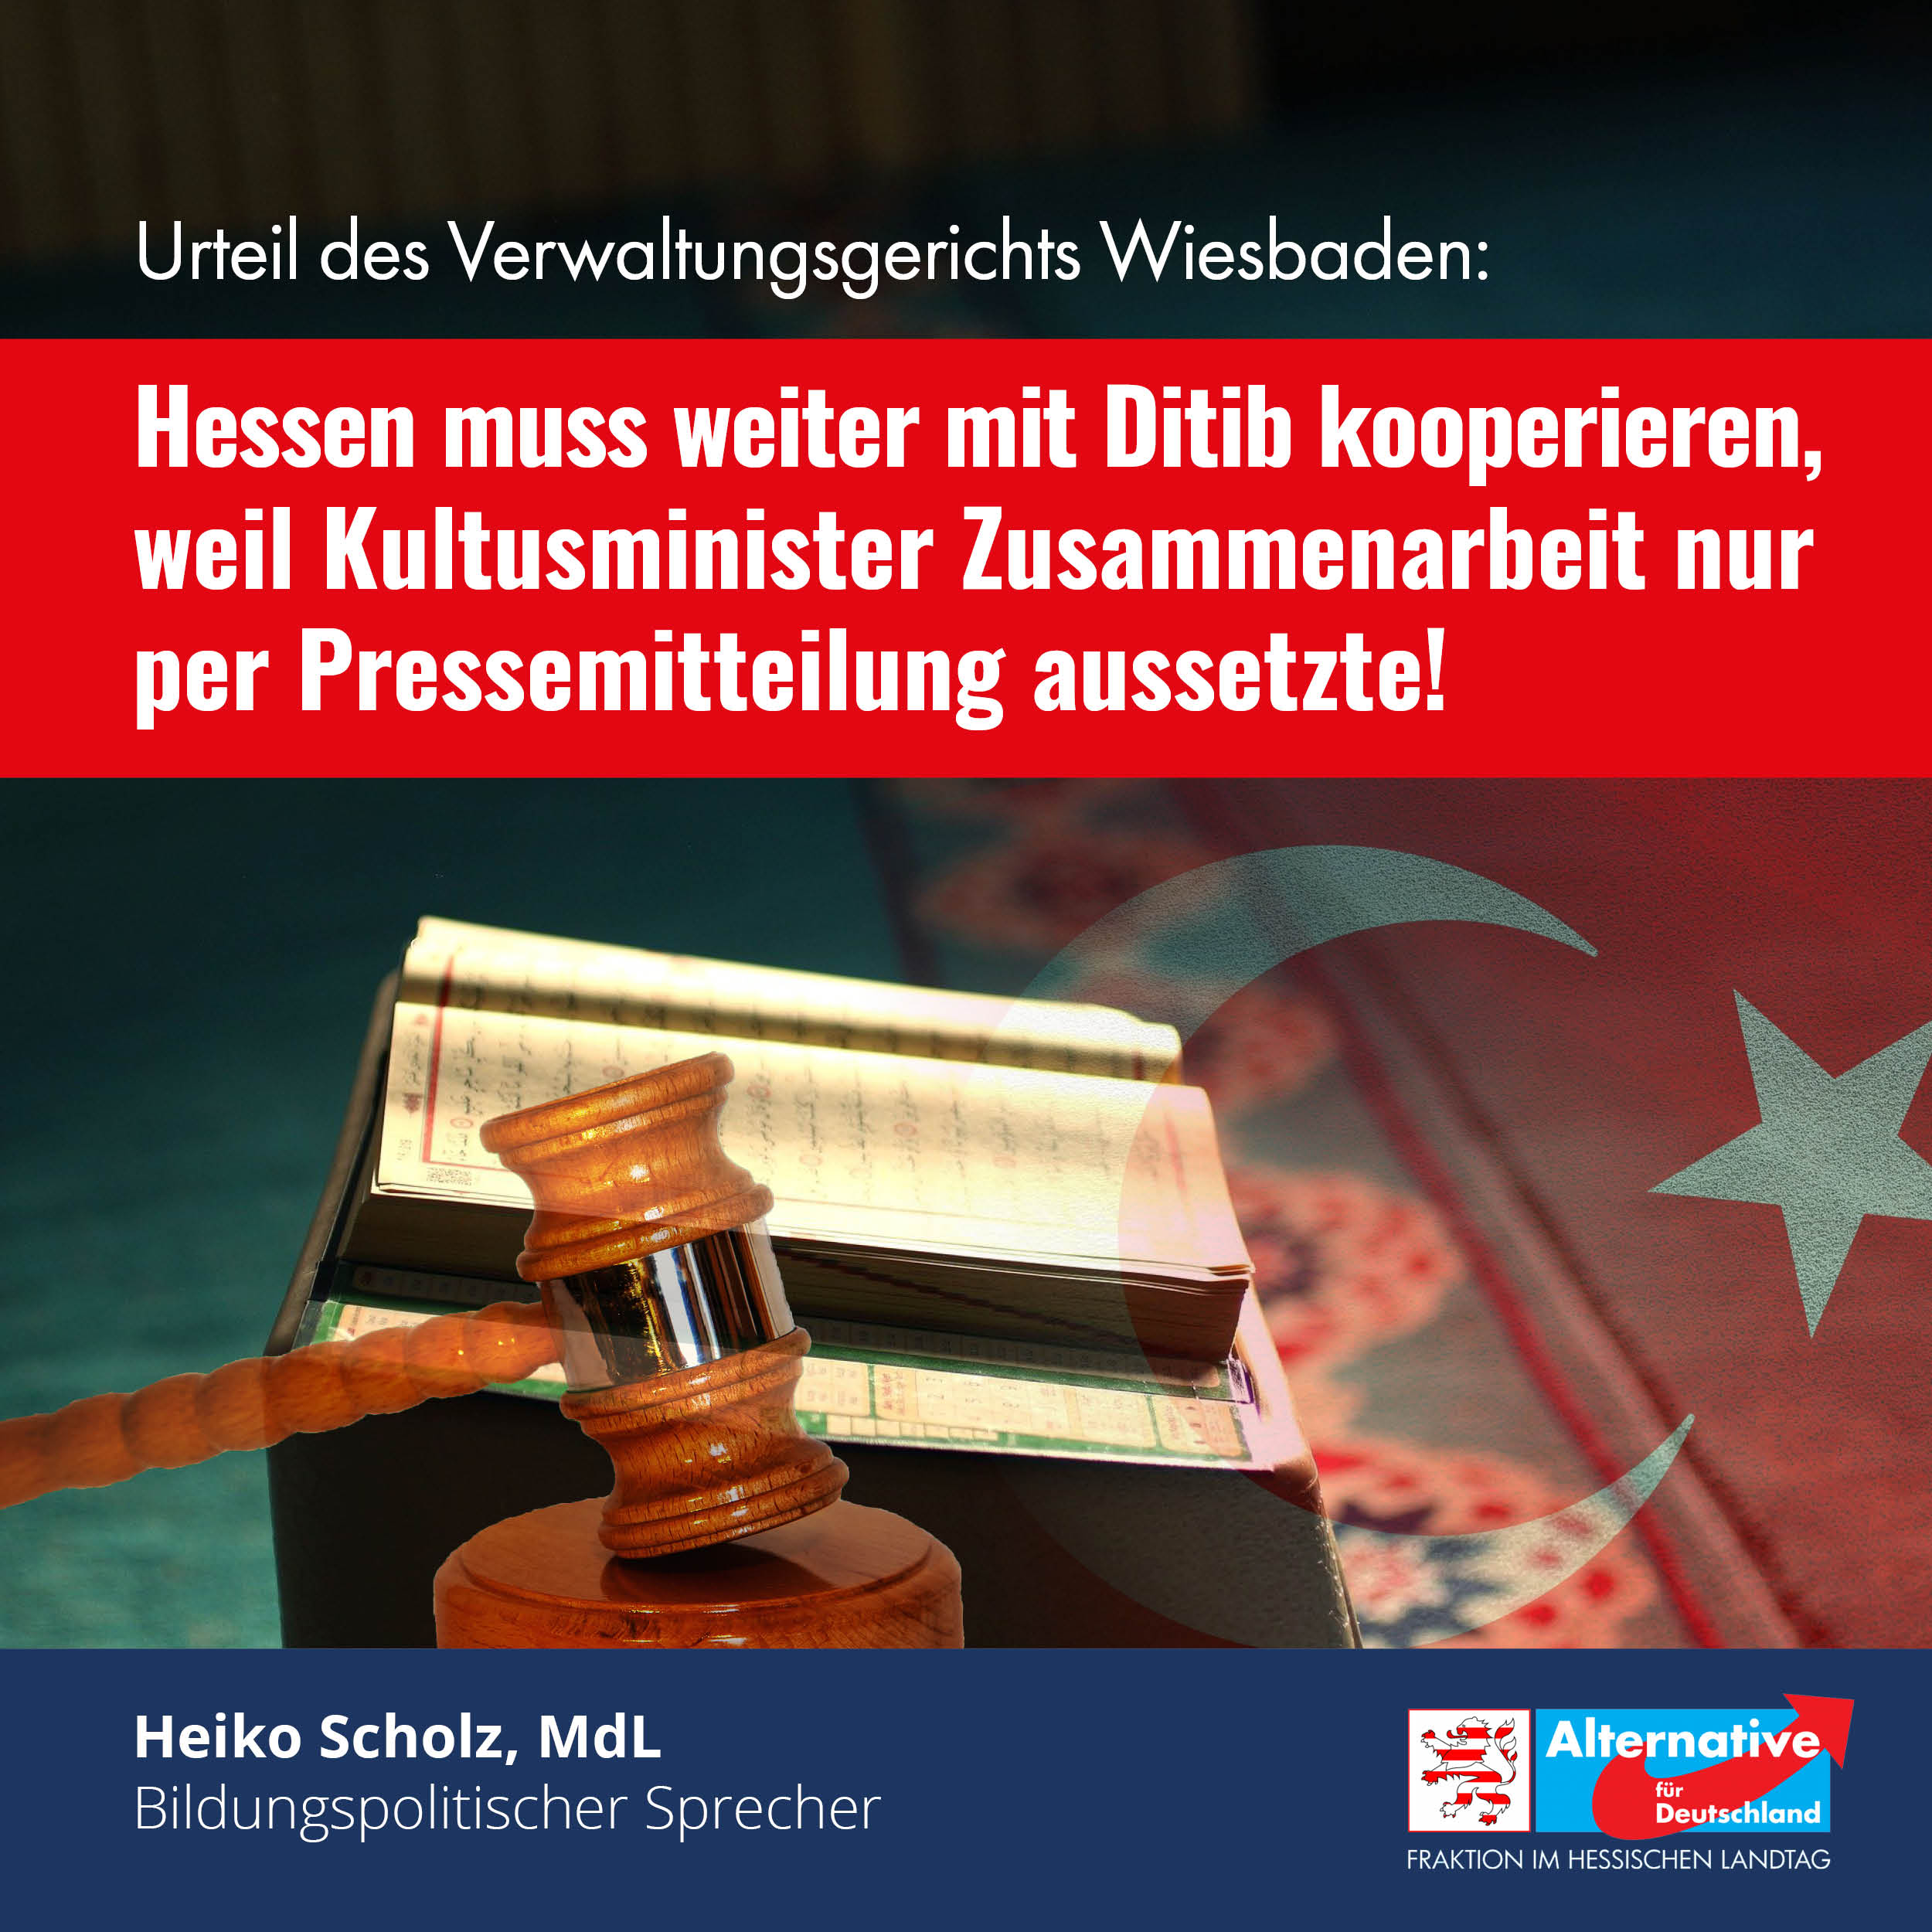 You are currently viewing Verwaltungsgericht Wiesbaden: Hessen muss weiter mit Ditib kooperieren!